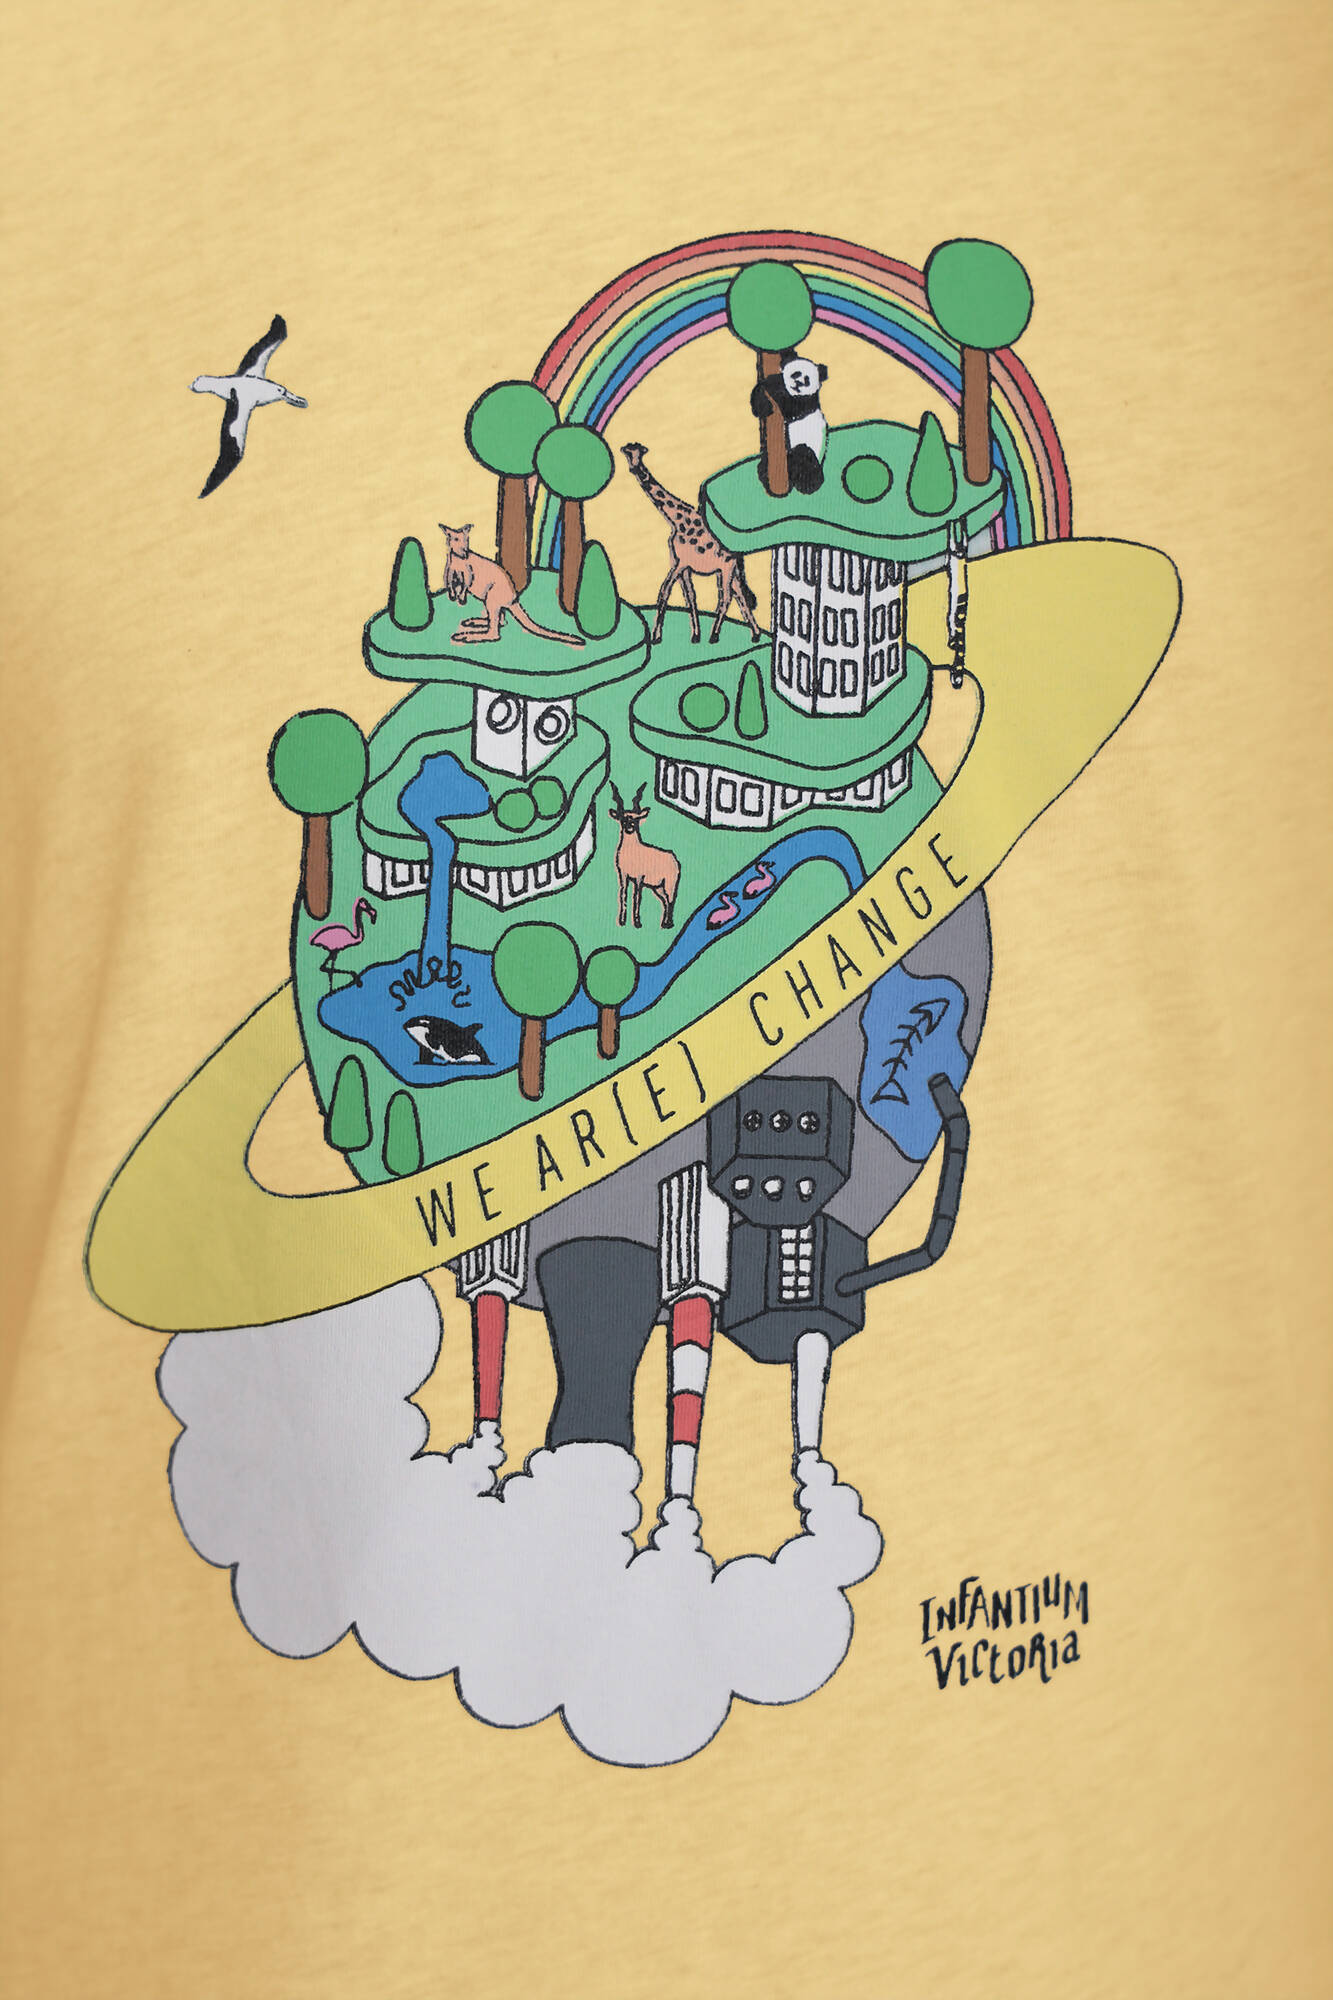 Grafische T-Shirts für Jungen und Mädchen – Earth Day-Aufdruck